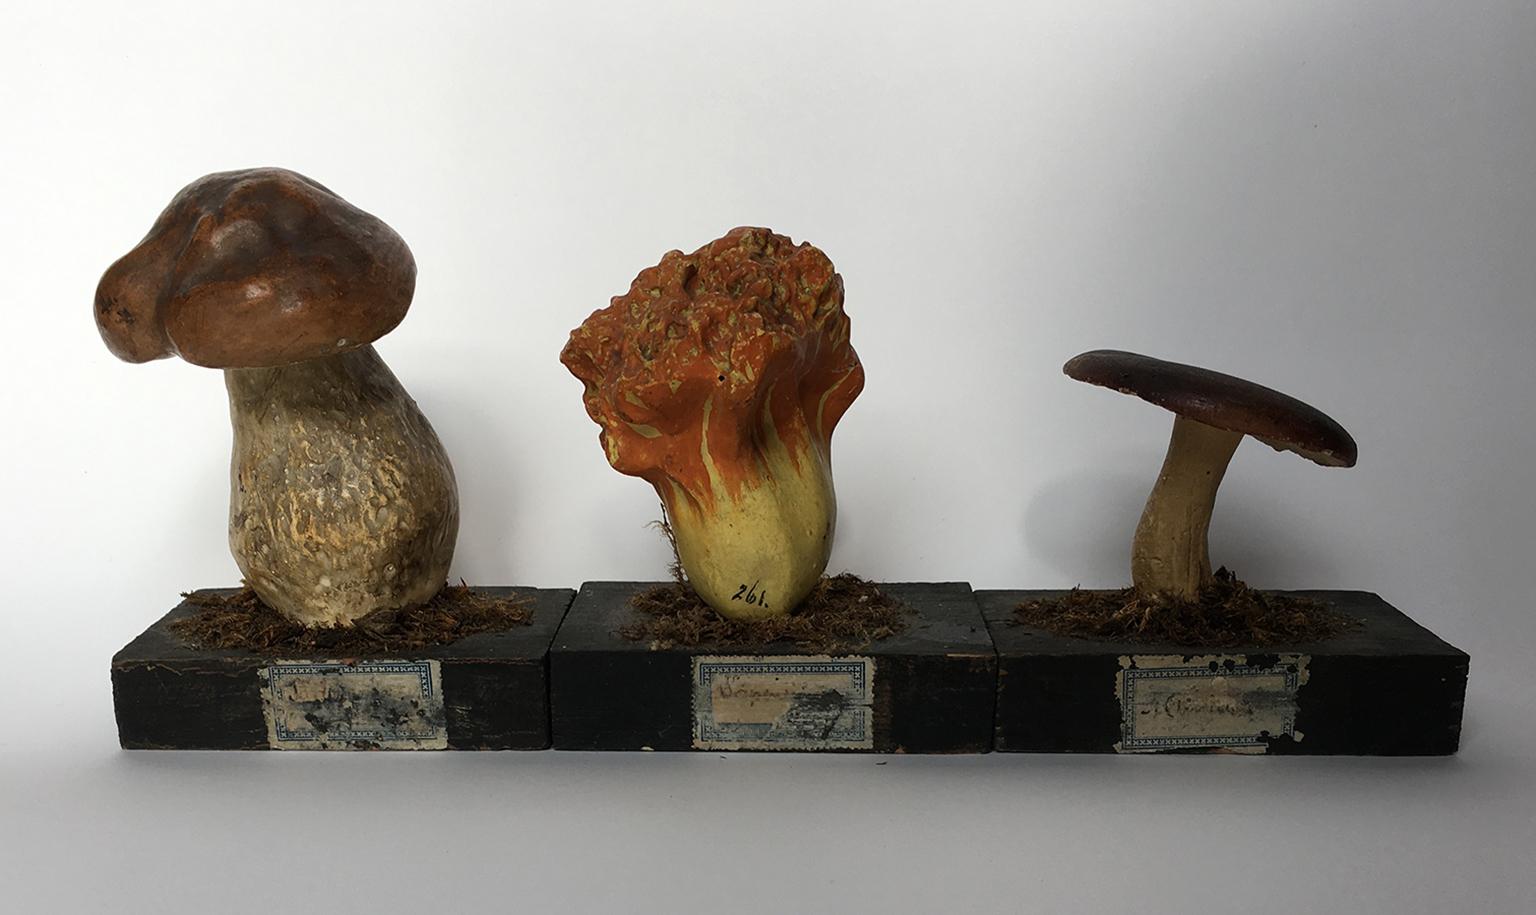 painted wood mushrooms